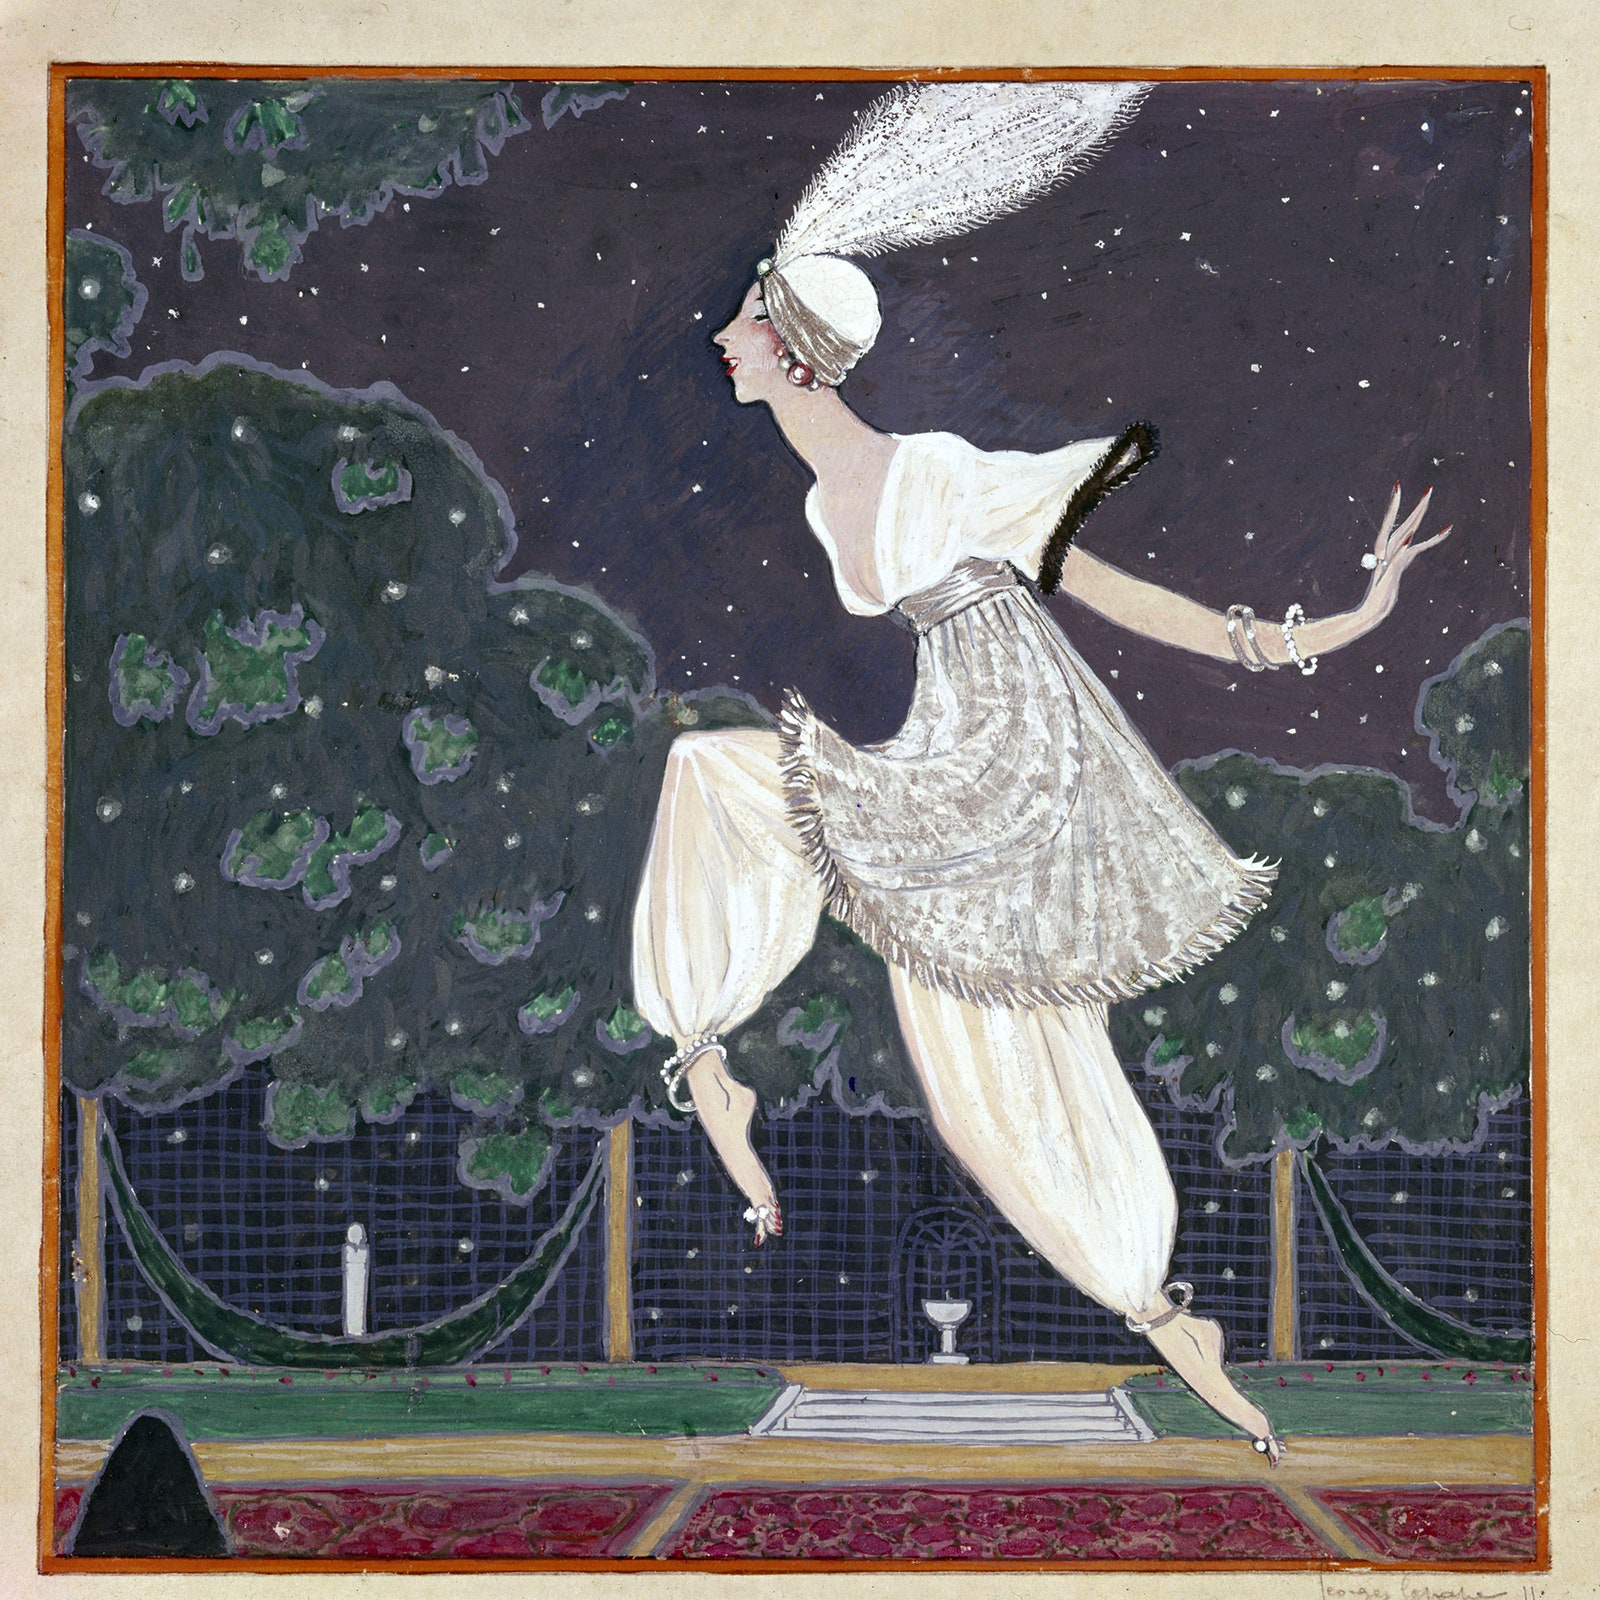 Иллюстрация художника Жоржа Лепапа на которой изображена жена Пуаре Дениза на вечеринке «Тысяча и одна ночь» 1911